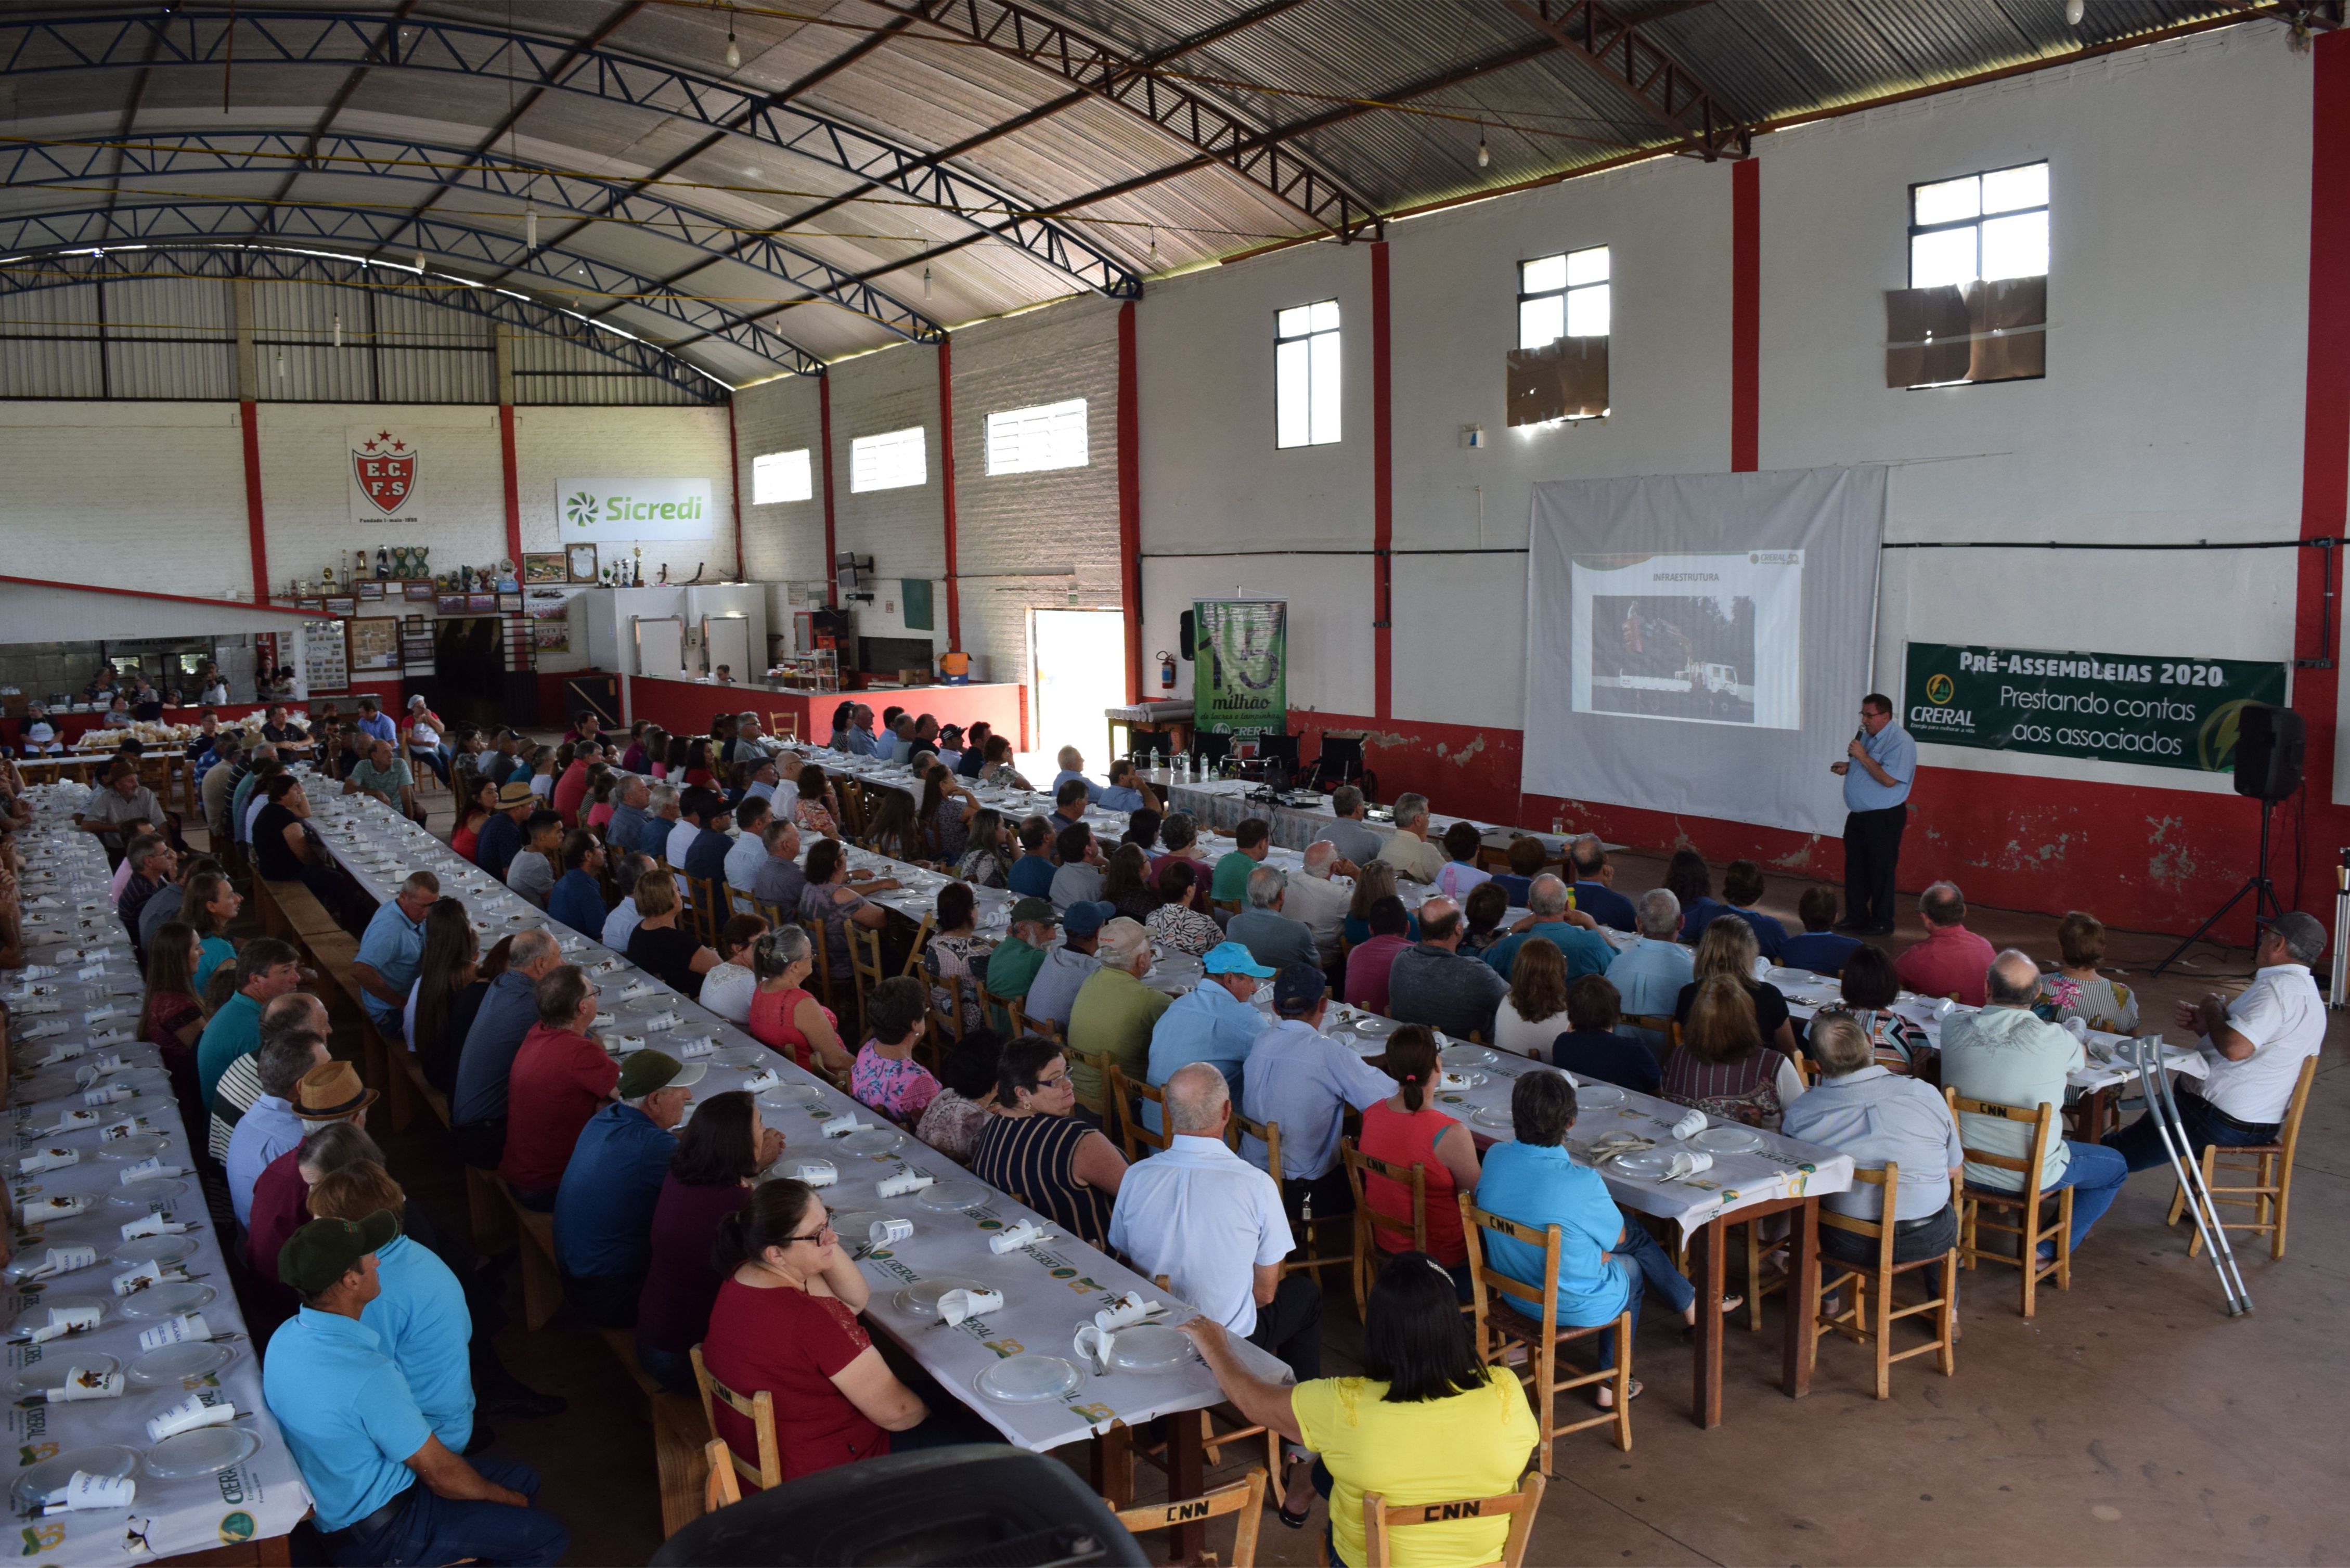 Creral encerra ciclo de reuniões nas comunidades com assembleia geral 